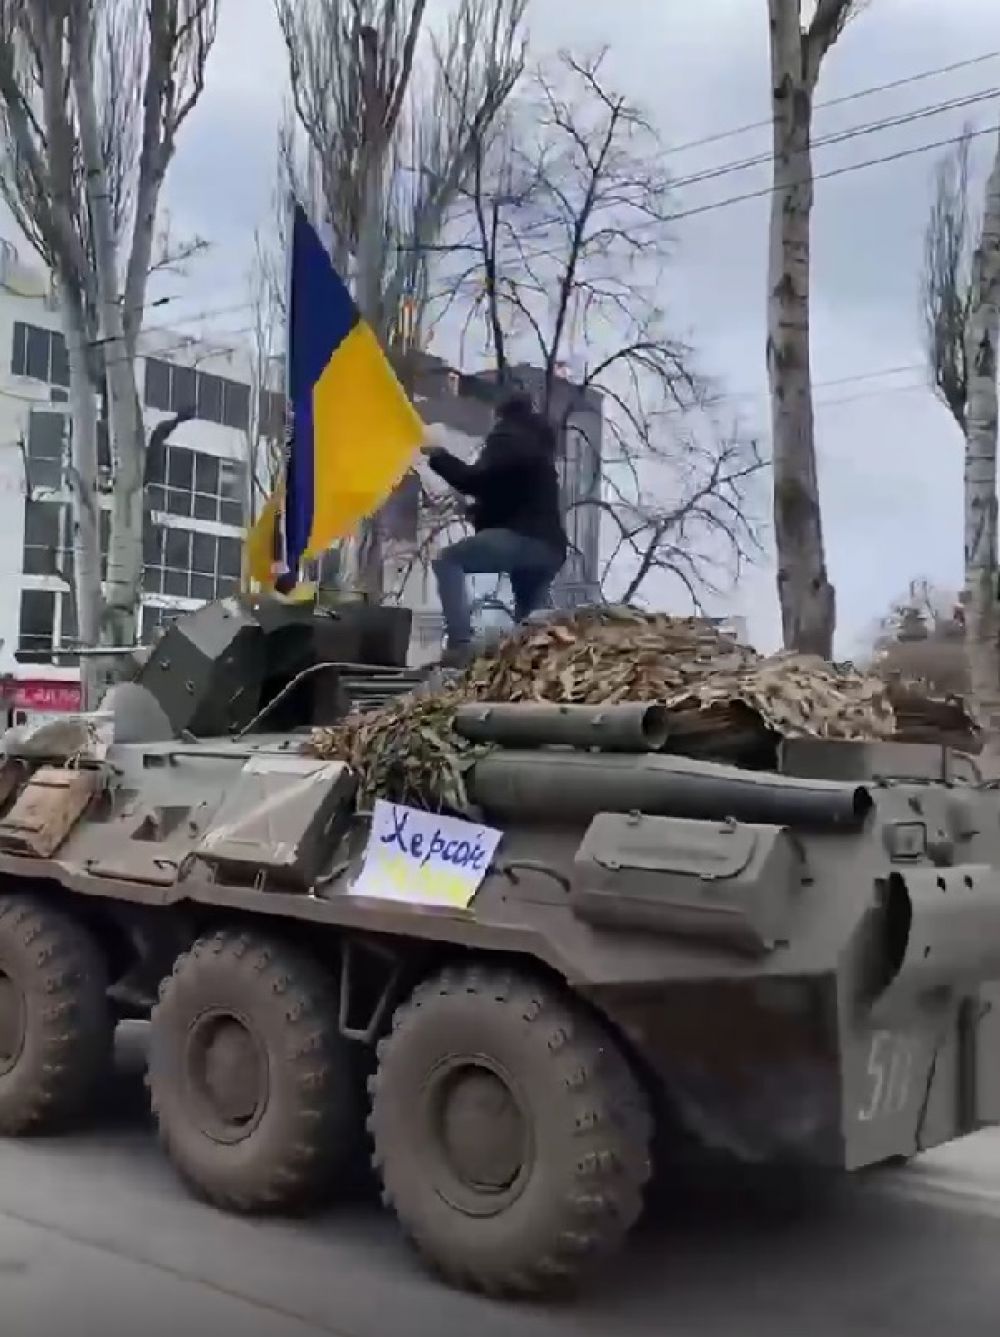 Херсонцы выходили на протесты, несмотря на запугивания со стороны россиян. Довольно известным стало фото, где местный житель взобрался на один из рoccийских БТРов с украинским флагом во время протестов. 